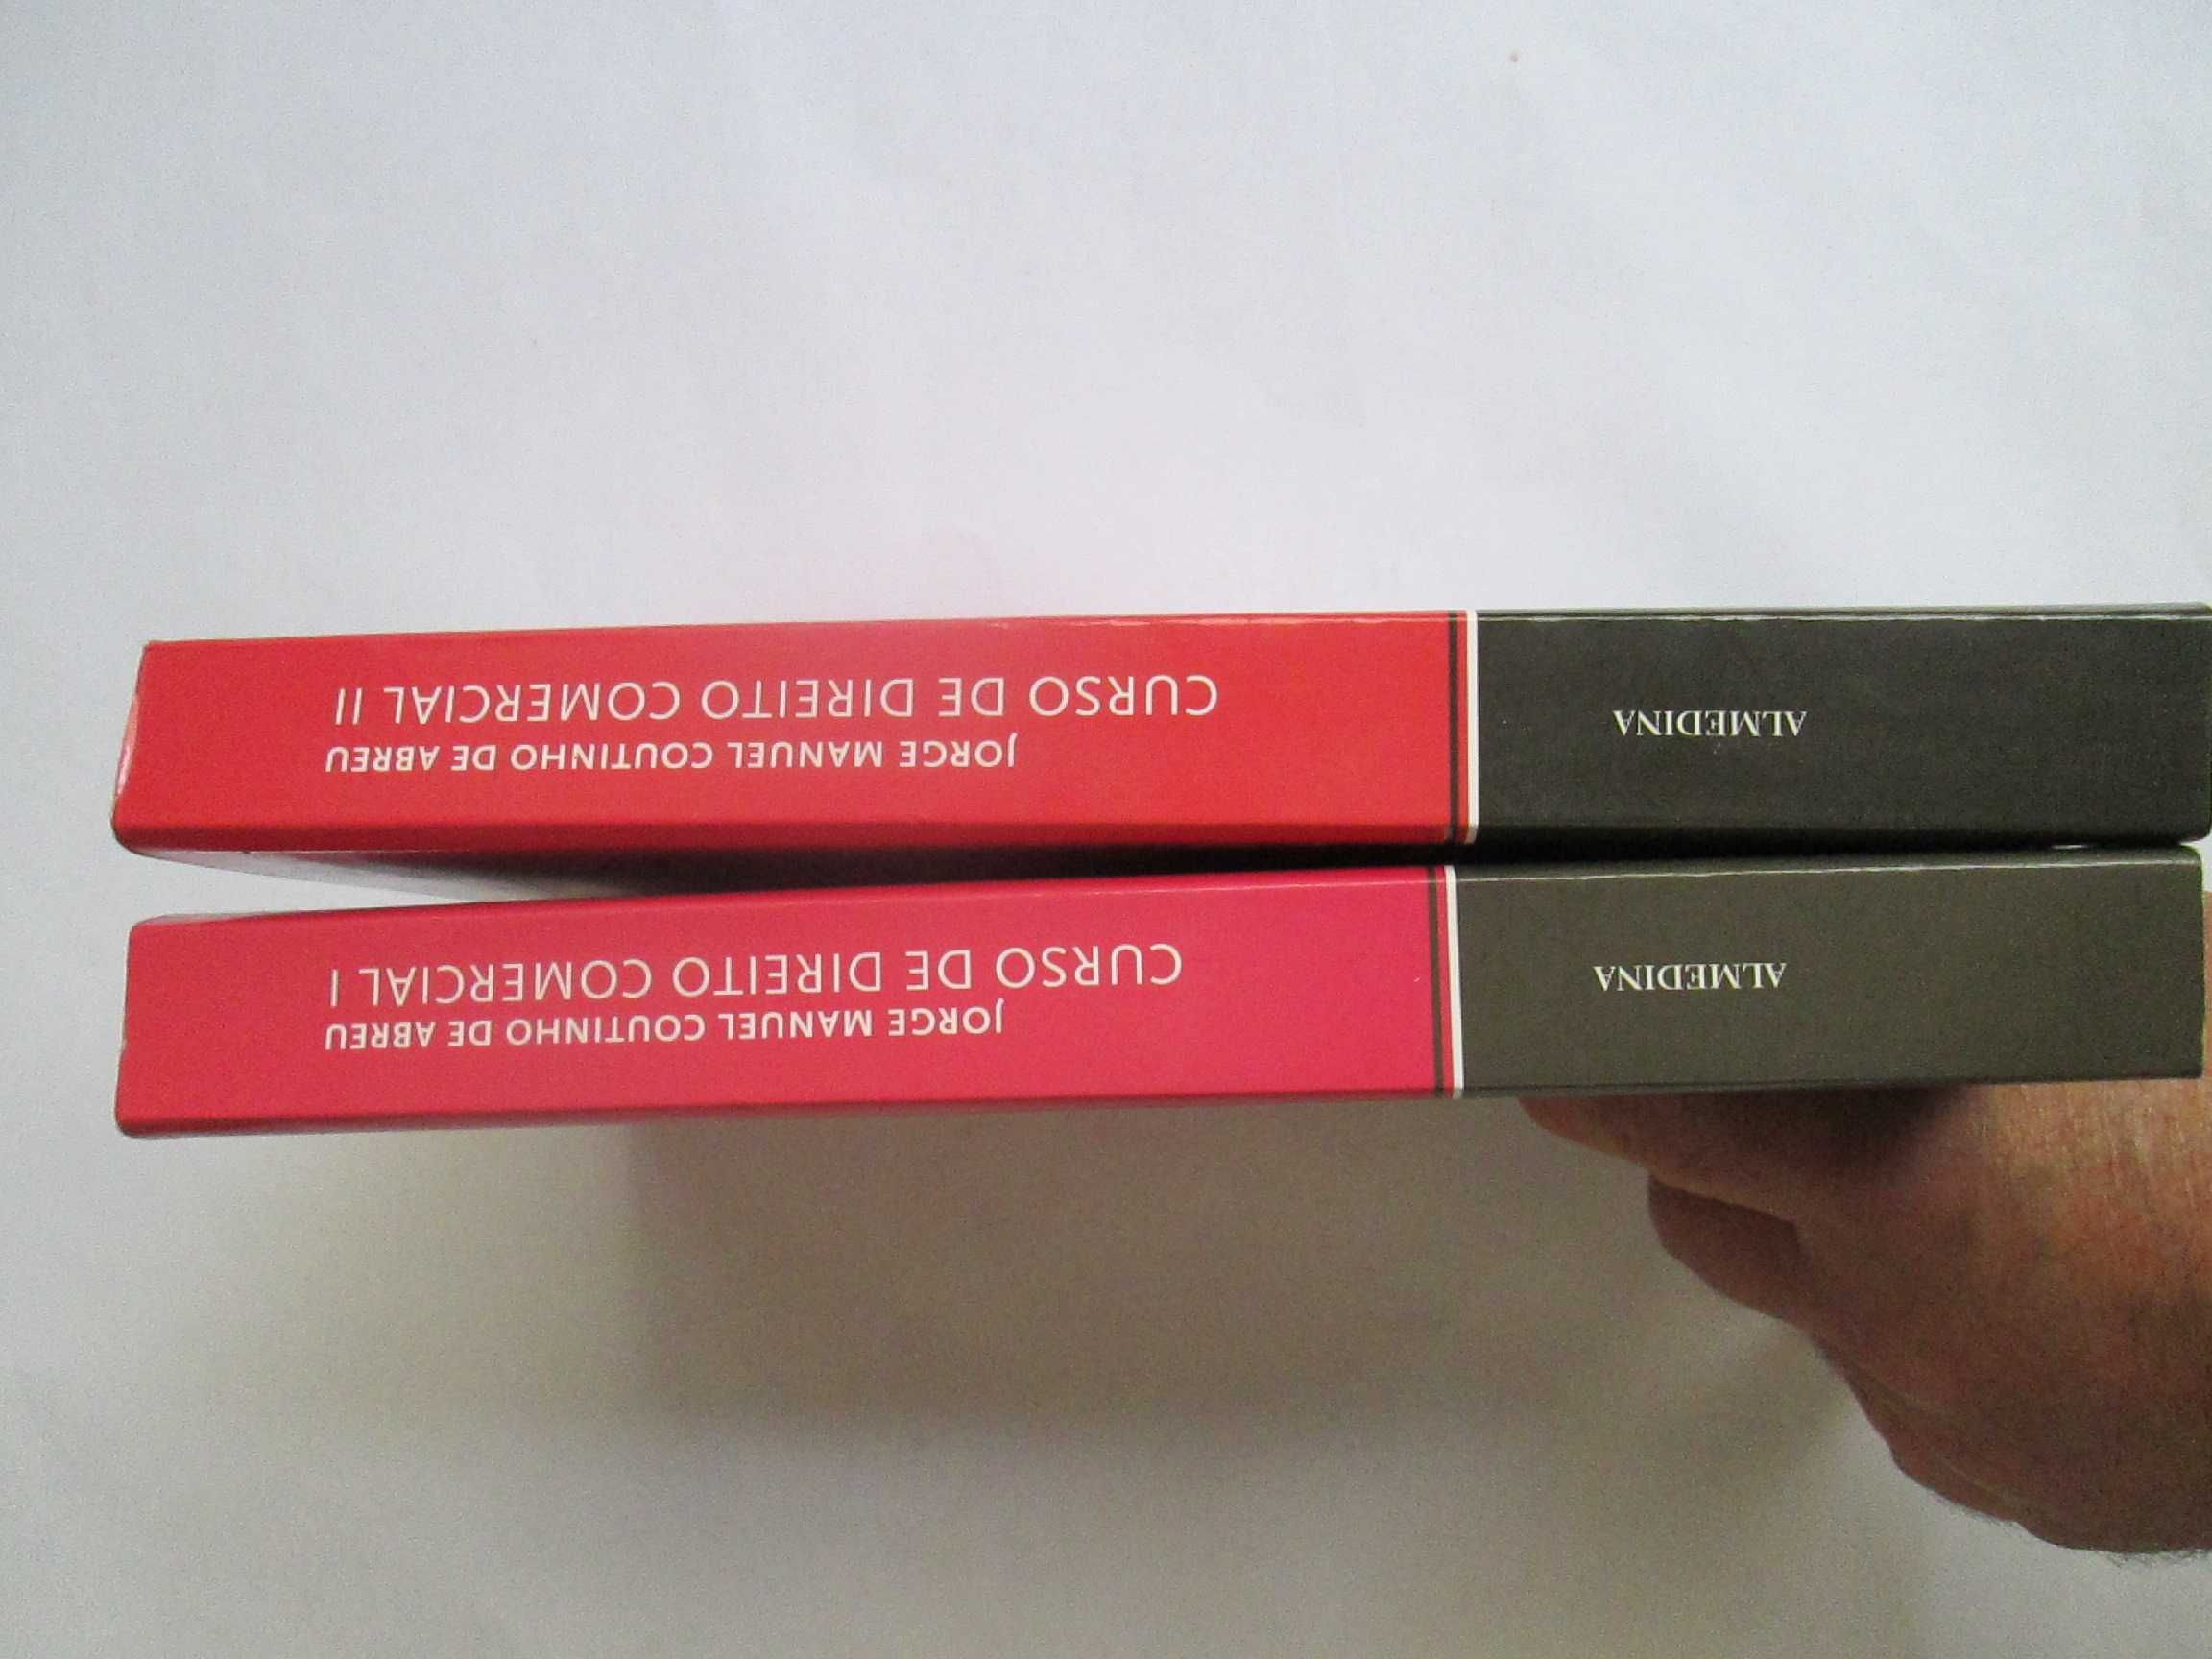 Curso de Direito Comercial (2 vol.), de Jorge Manuel Coutinho de Abreu